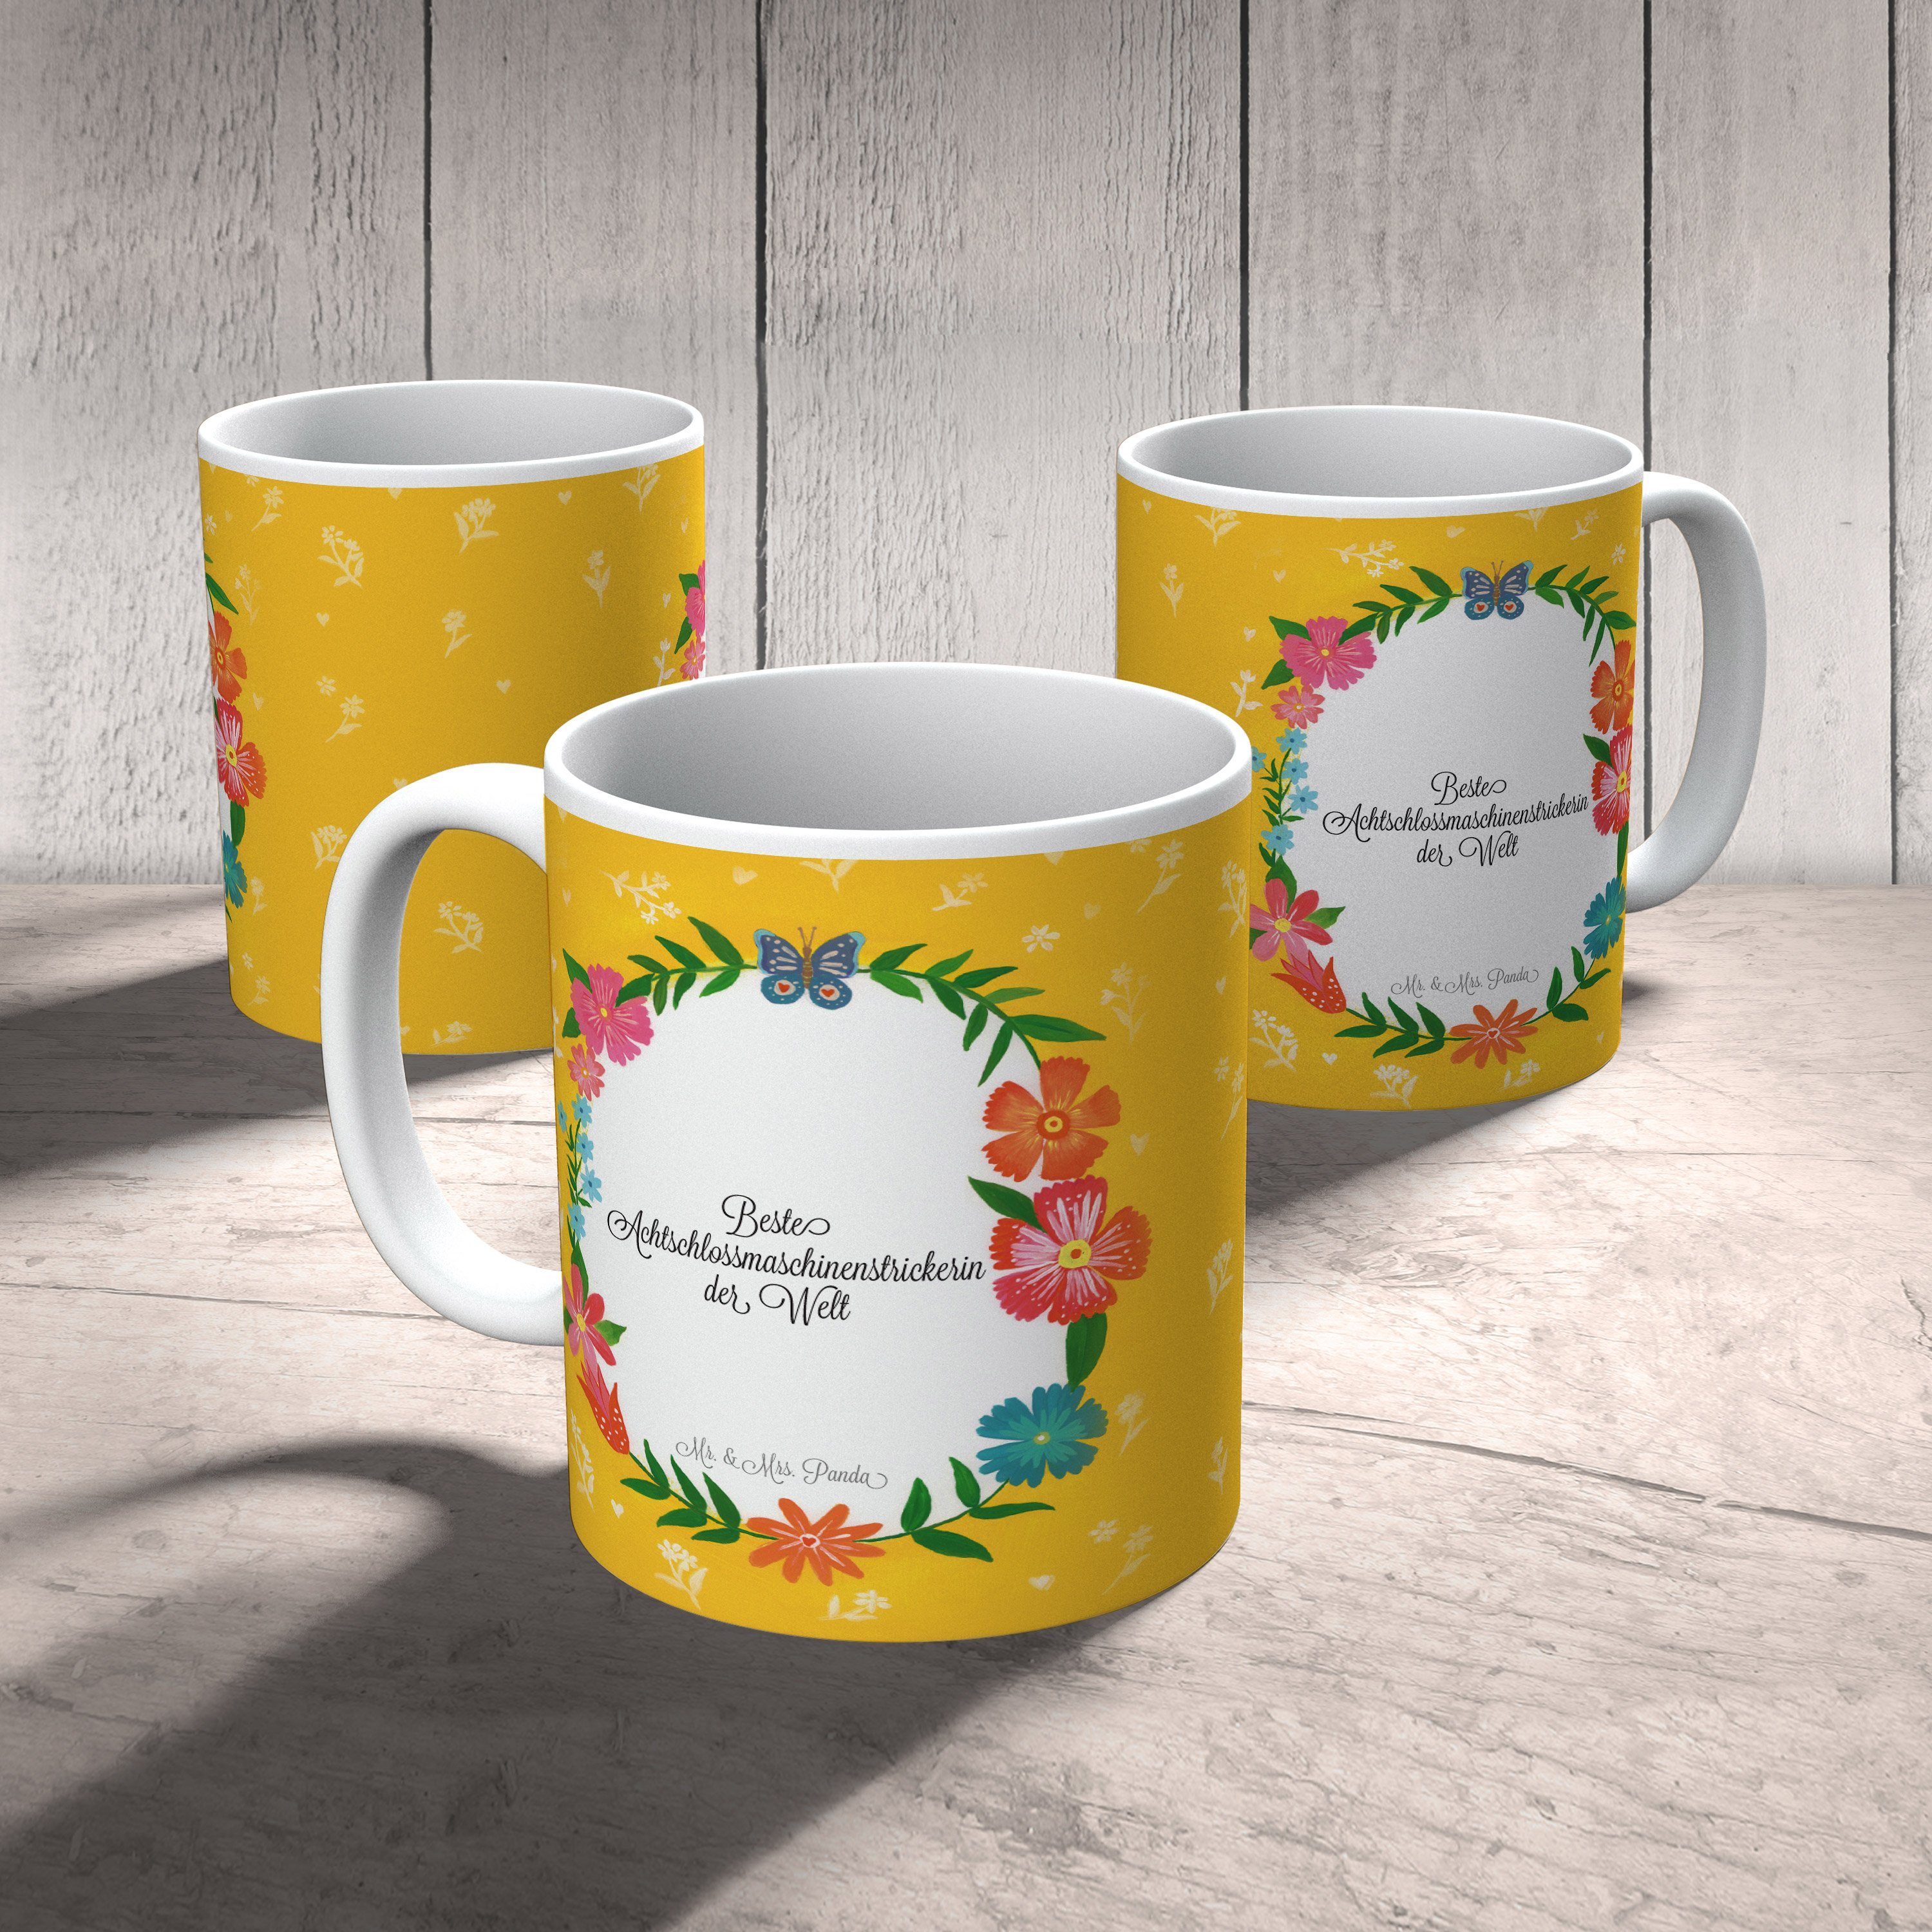 Geschenk, Mr. - Tasse & Achtschlossmaschinenstrickerin Keramik Gratulation, Tasse, Panda Kaffee, Mrs.